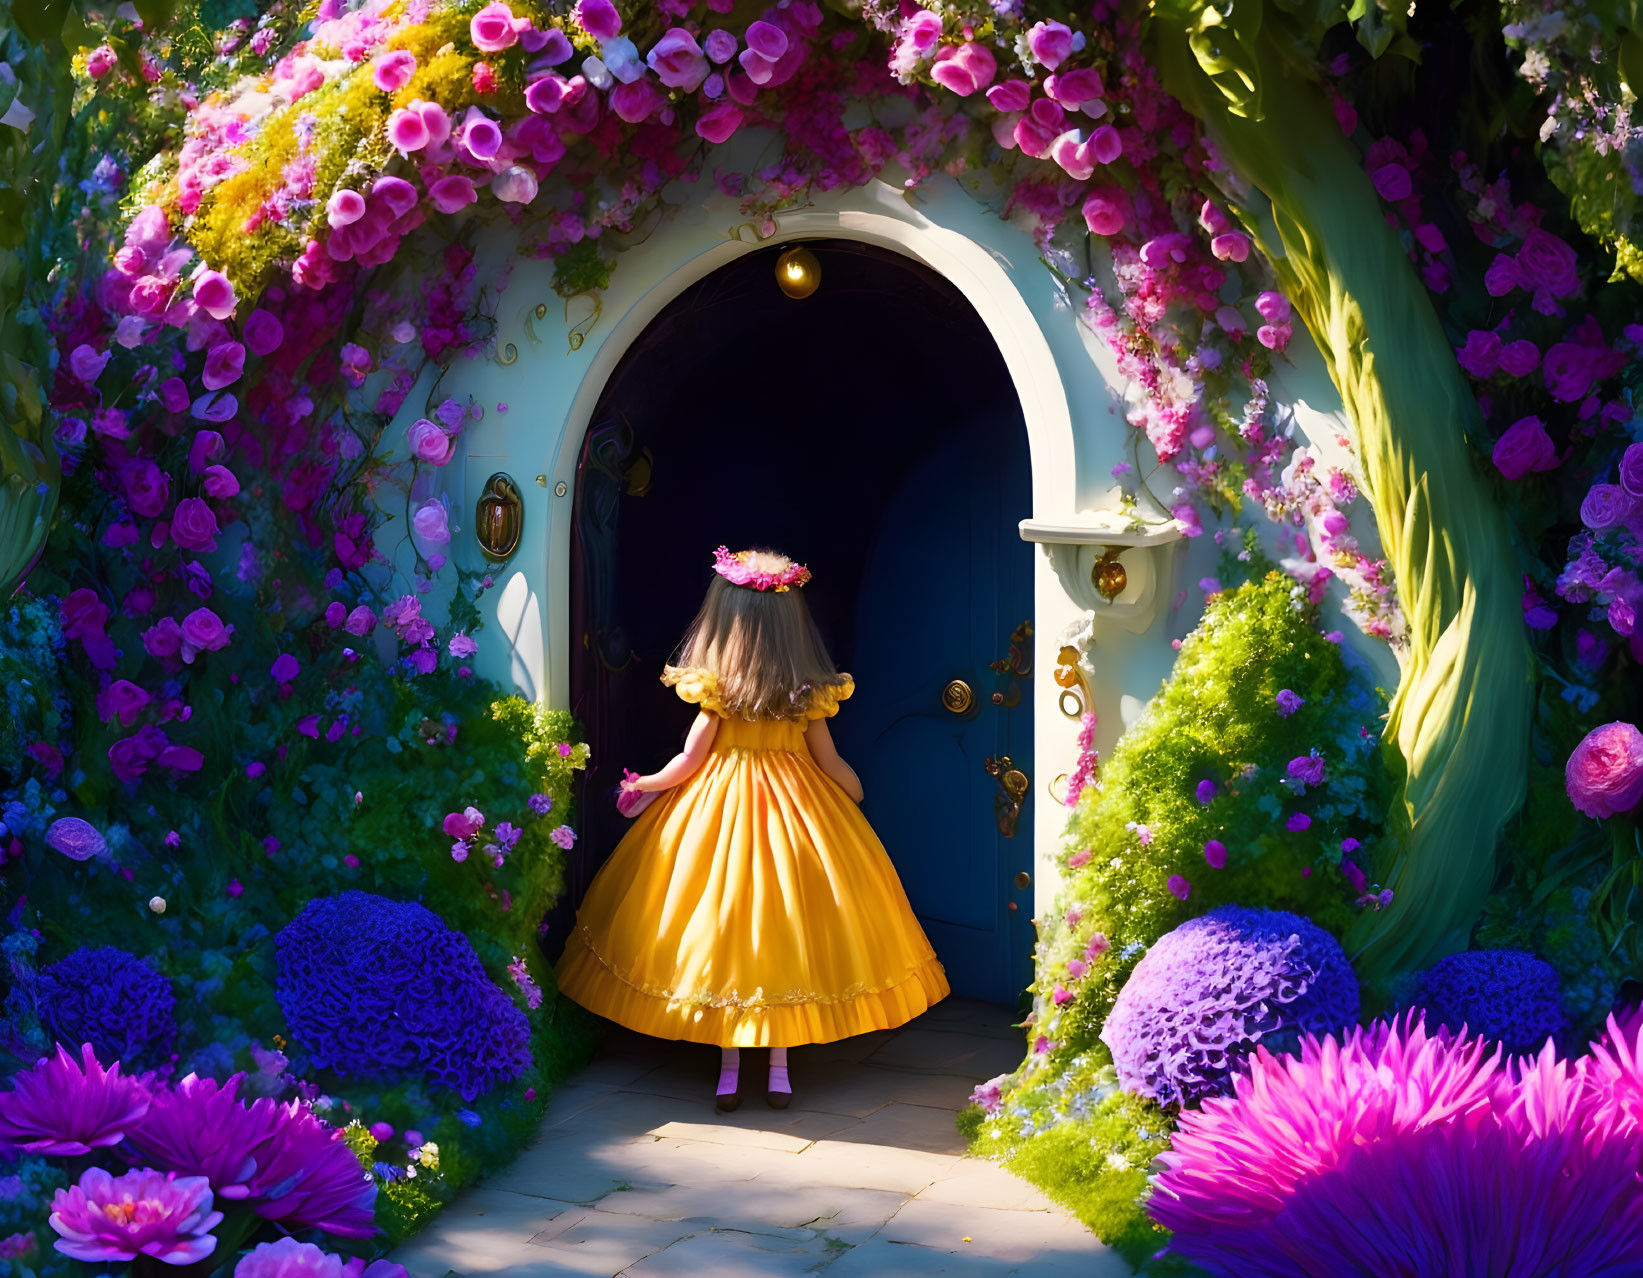 Alice's wonderland : Entering Wonderland 